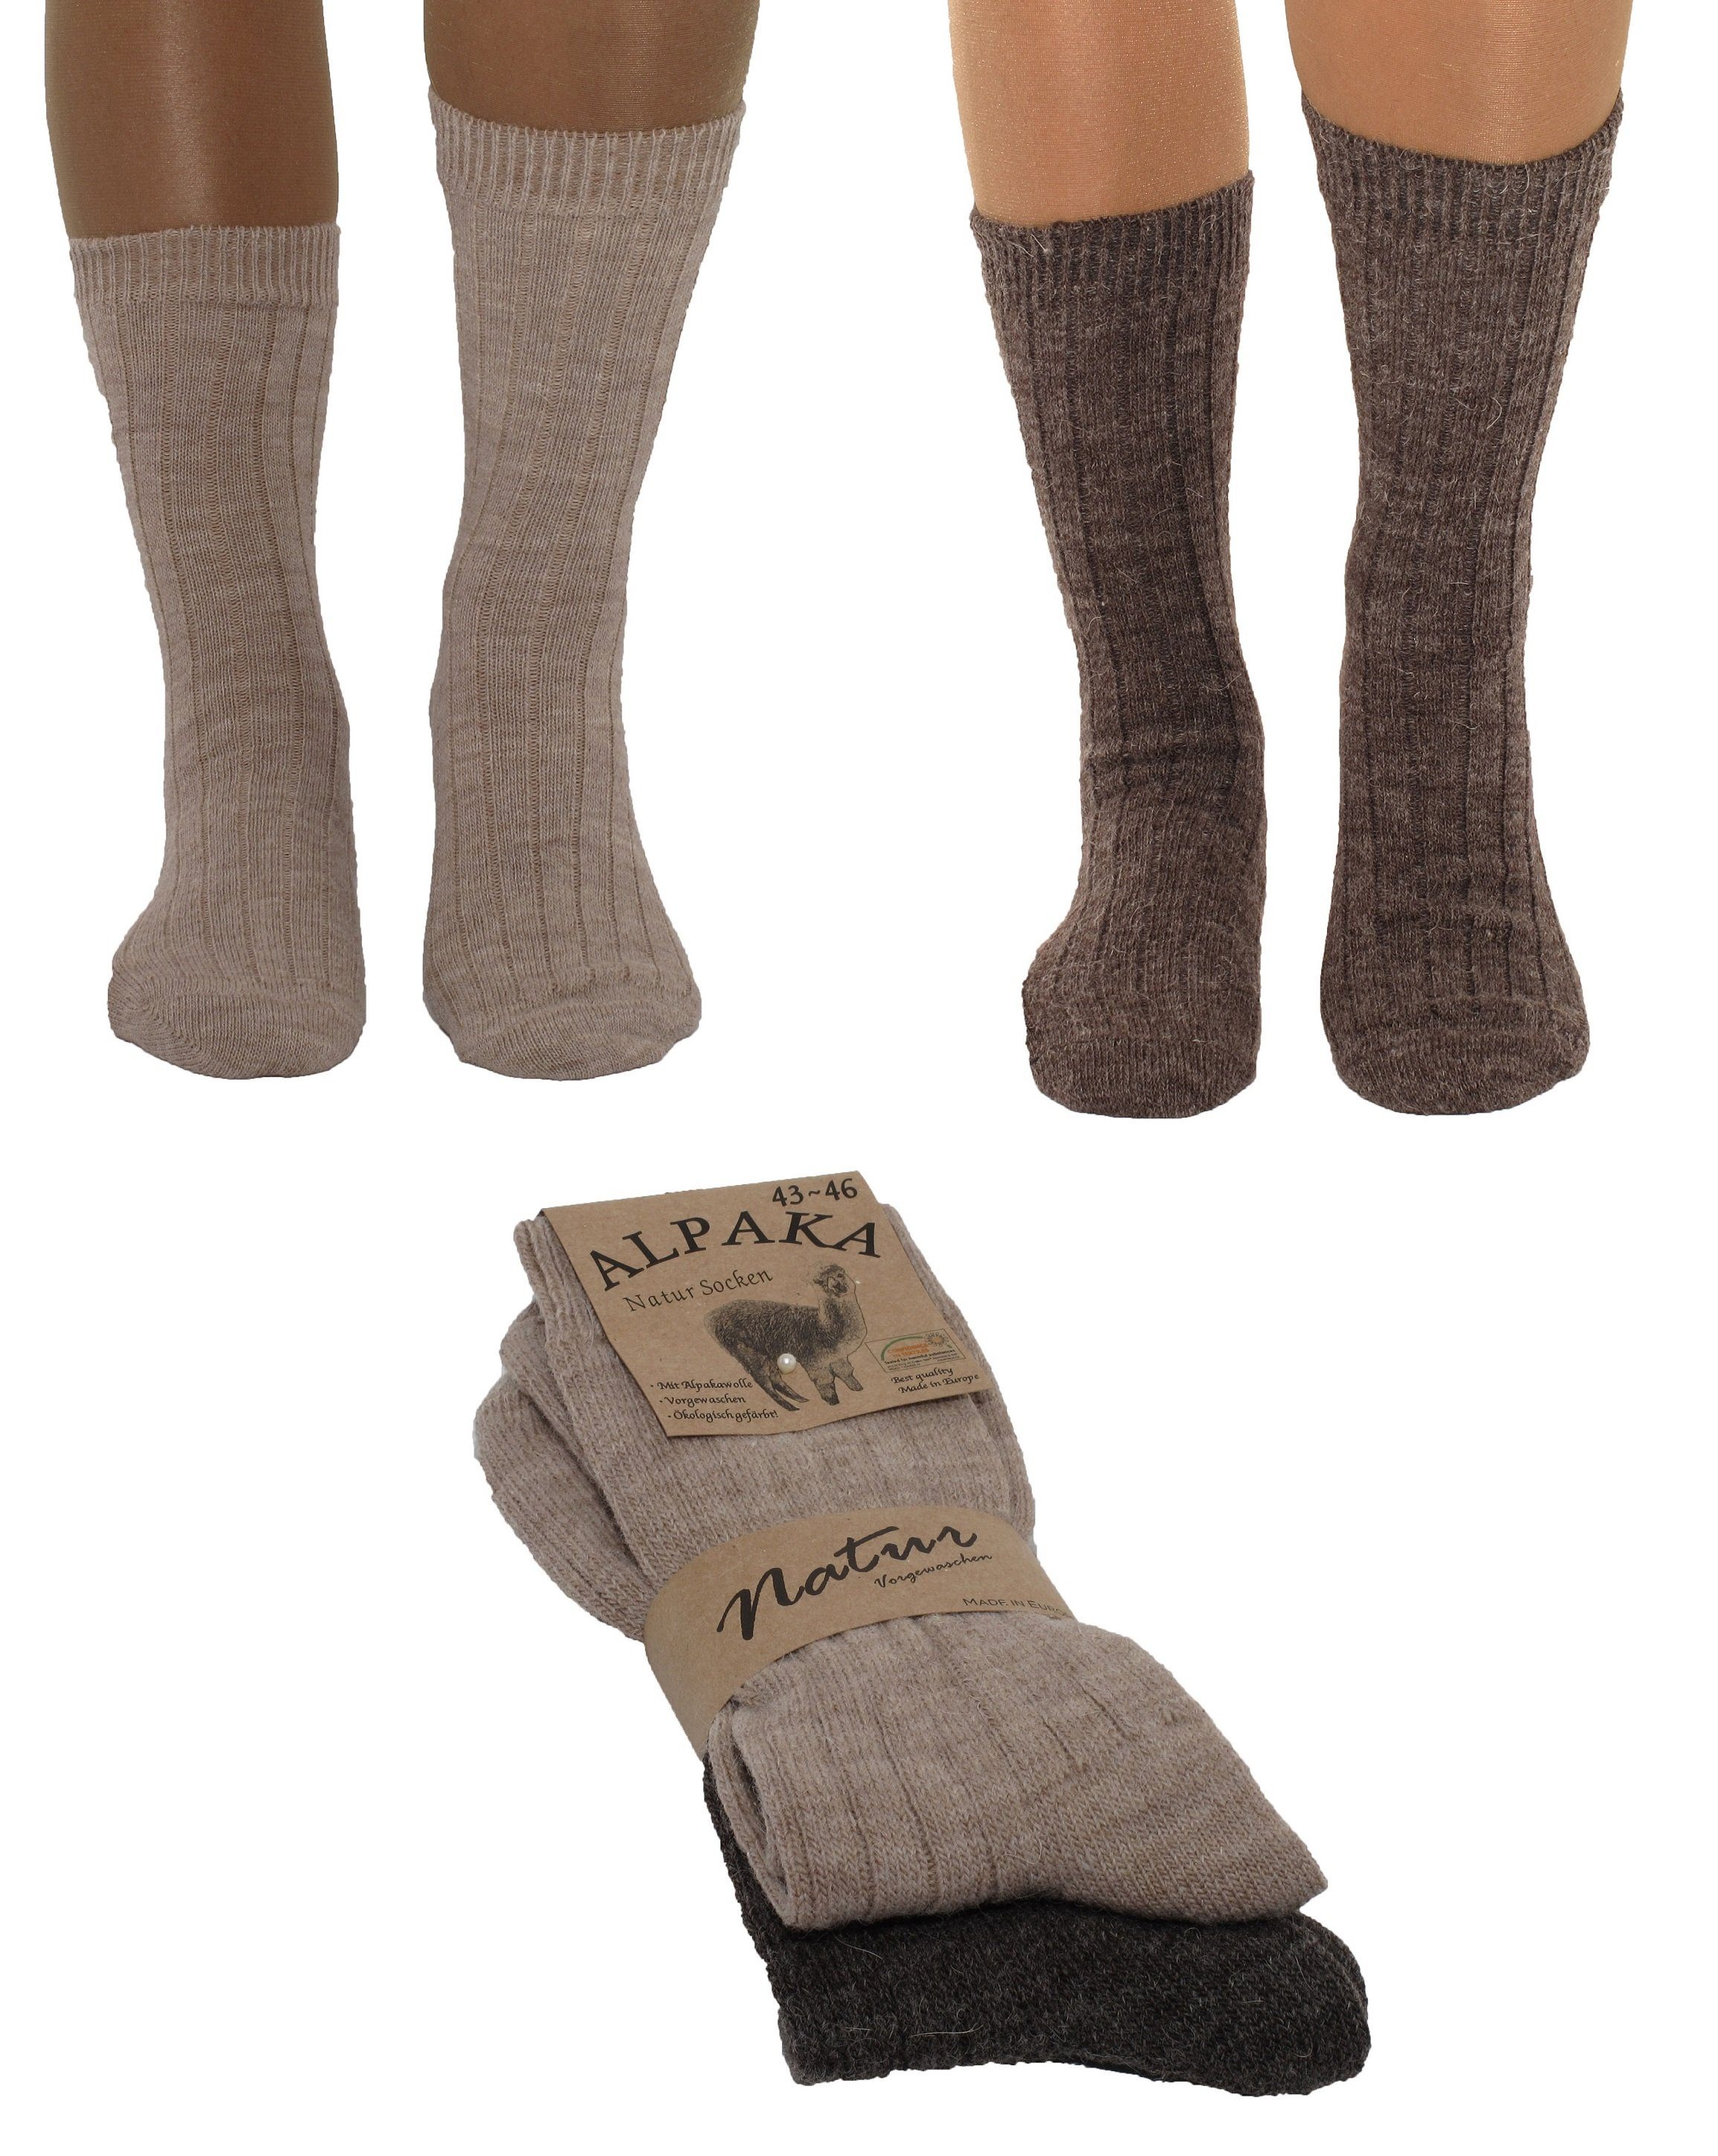 Markenwarenshop-Style Haussocken 2 Paar Alpaka Socken Schafswolle Wollsocken Dünn gestrickt Strümpfe Hellbraun / Dunkelbraun